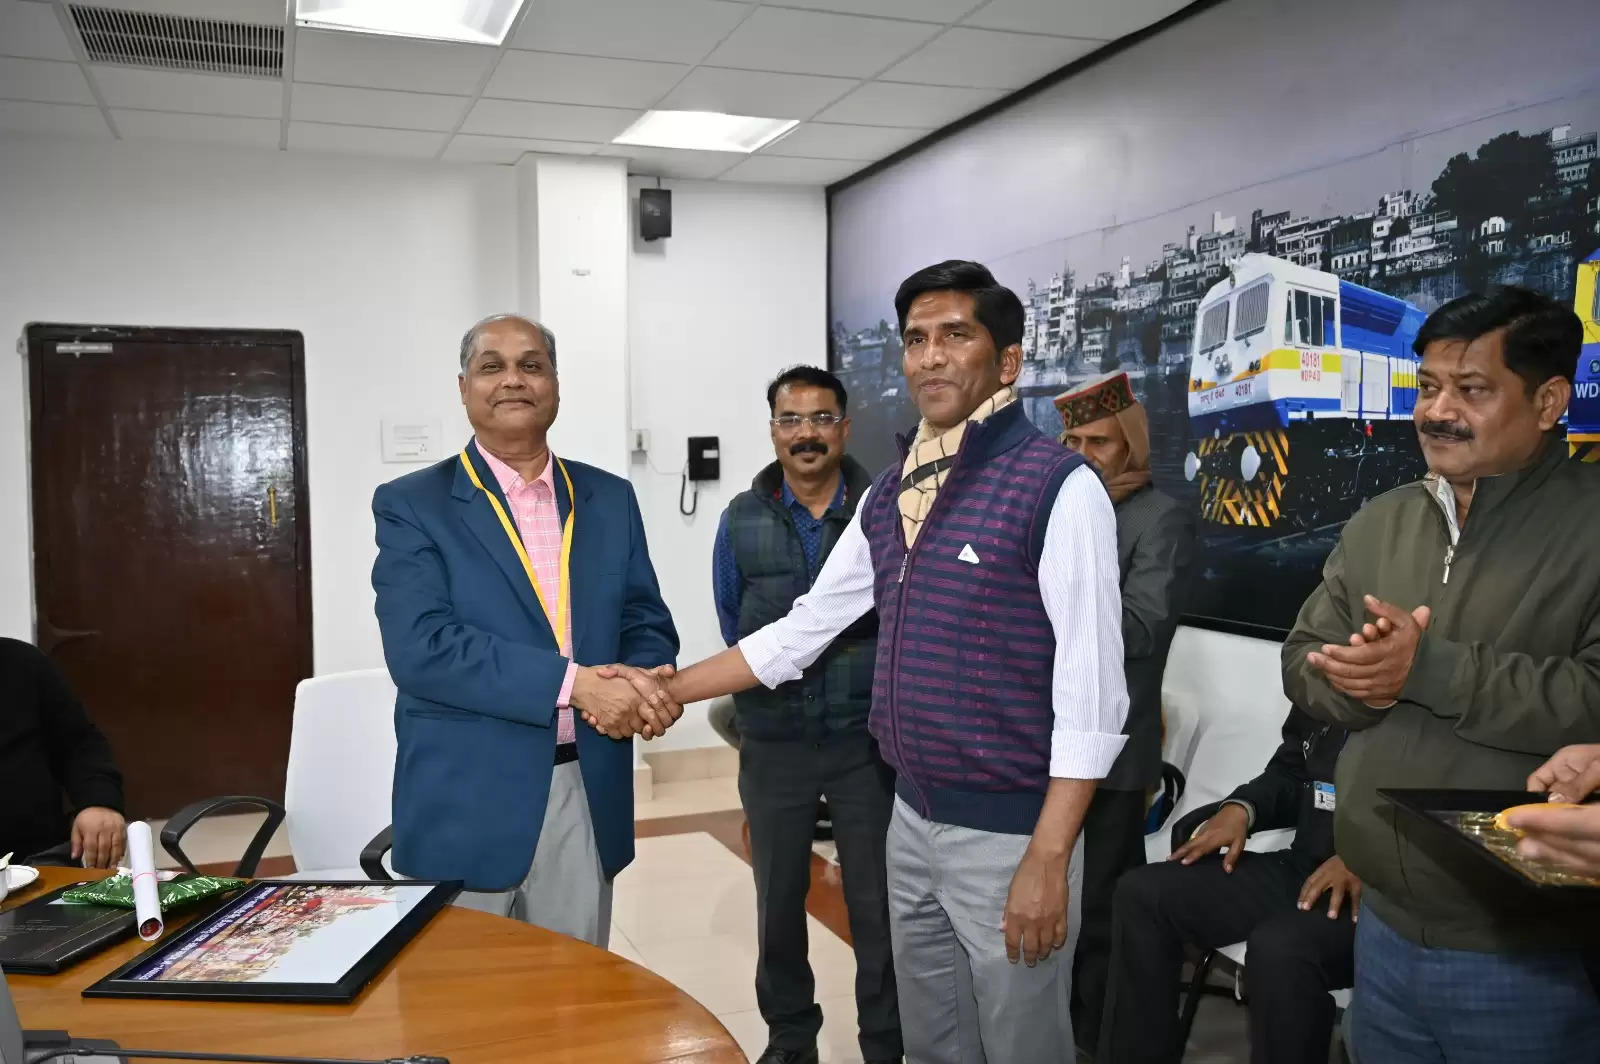 Varanasi News: बनारस रेल इंजन कारखाना के फिजियोथेरेपिस्ट एवं राष्ट्रीय वॉलीबॉल खिलाड़ी सहित कुल दस कर्मचारी सेवानिवृत्त